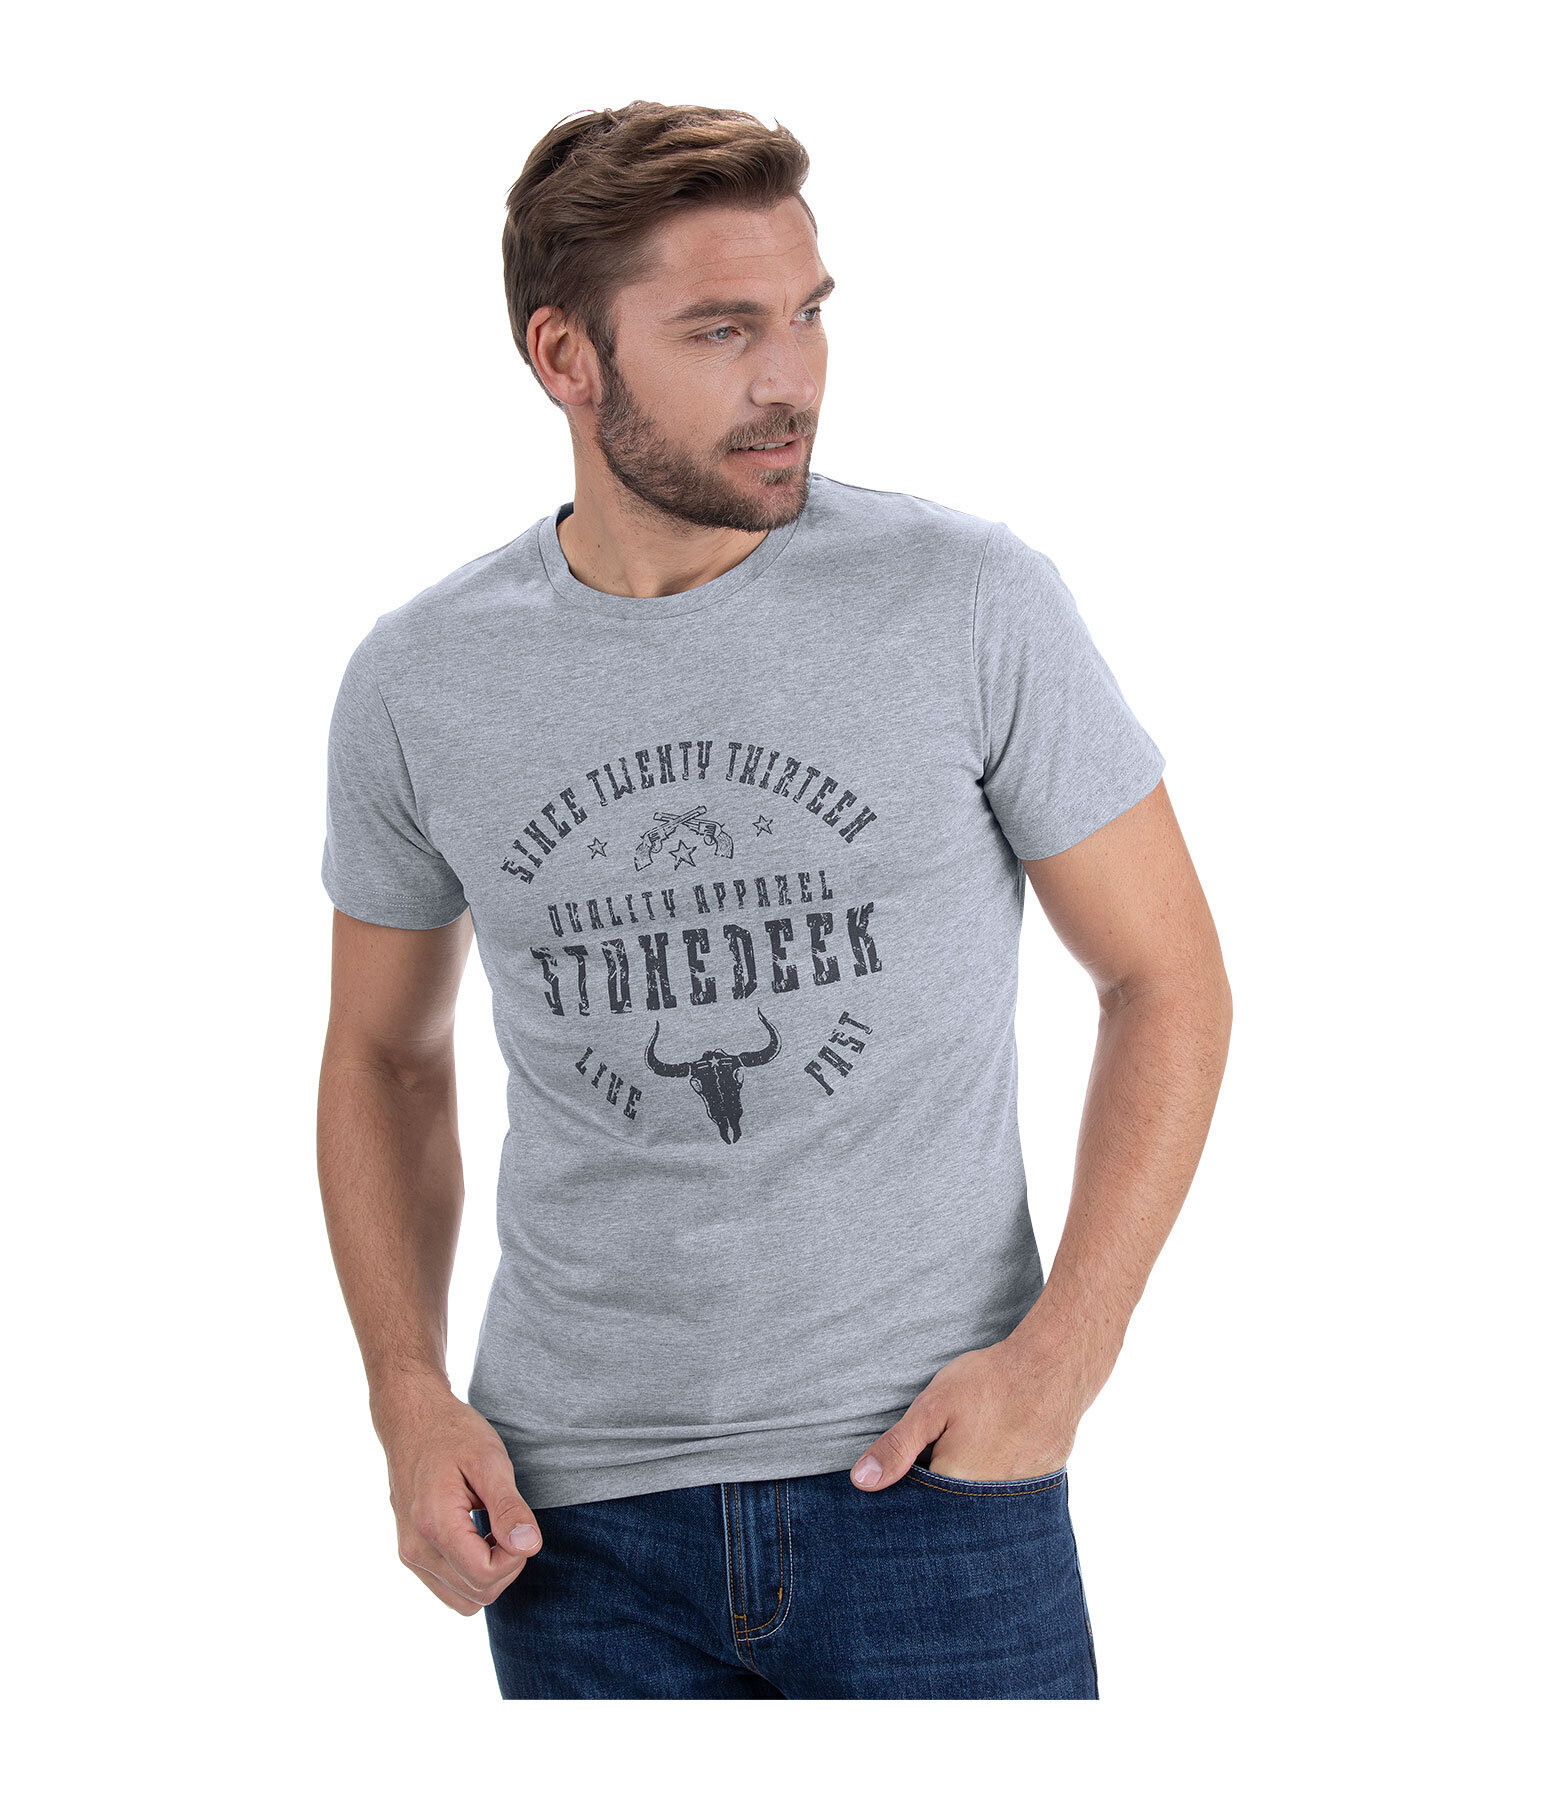 Herren-T-Shirt Hudson